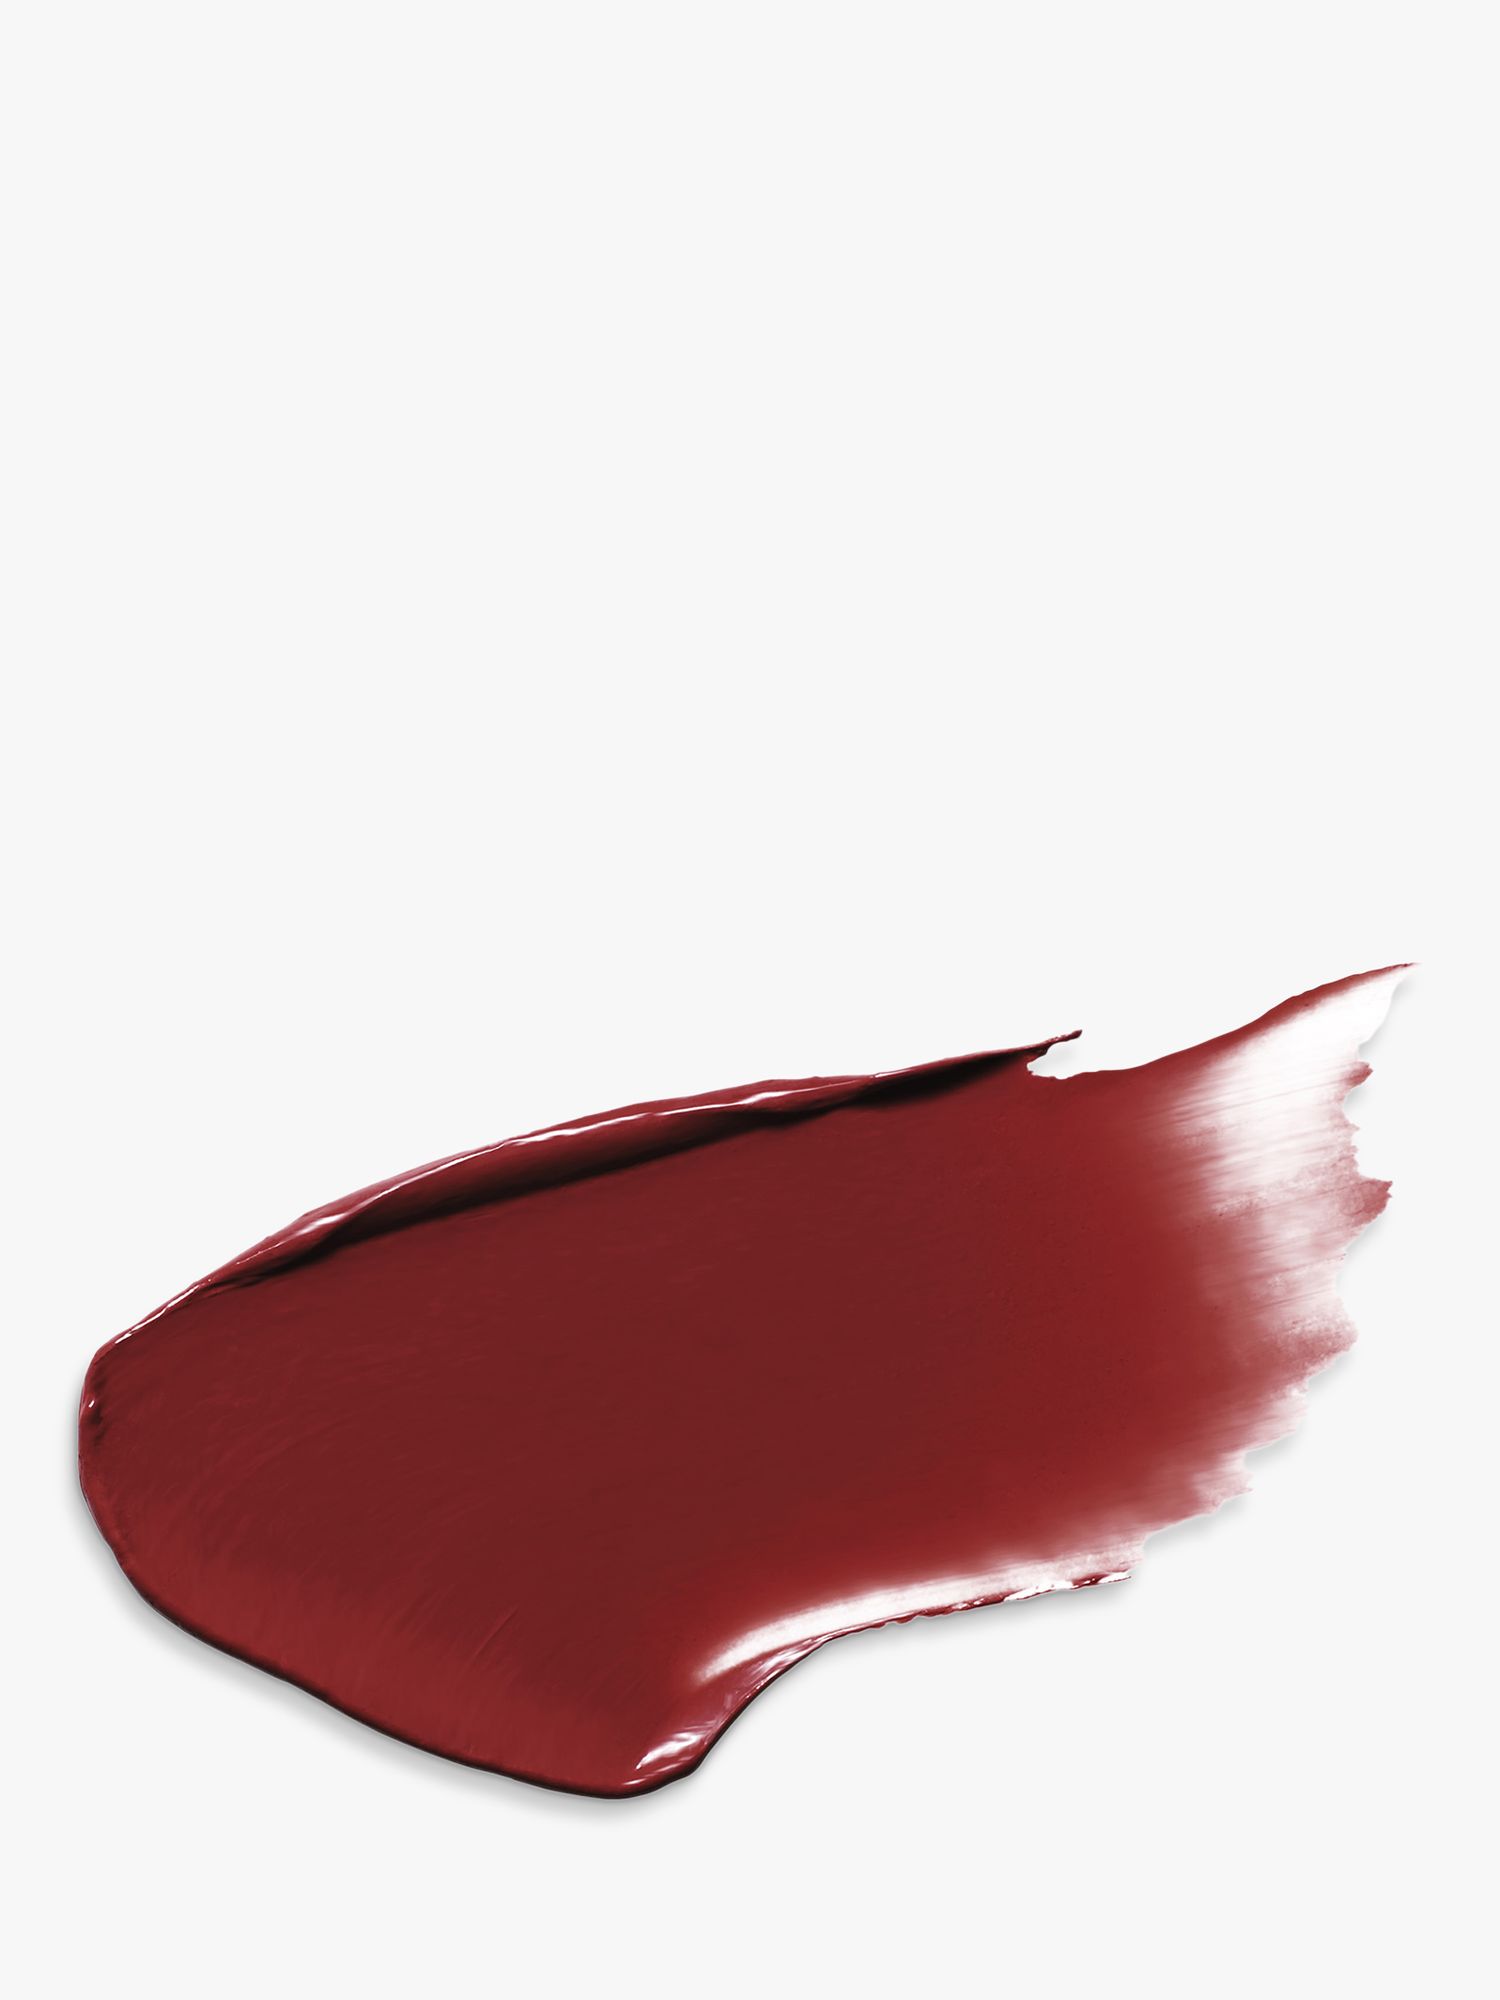 Laura Mercier Rouge Essentiel Silky Crème Lipstick, Rouge Profond 2